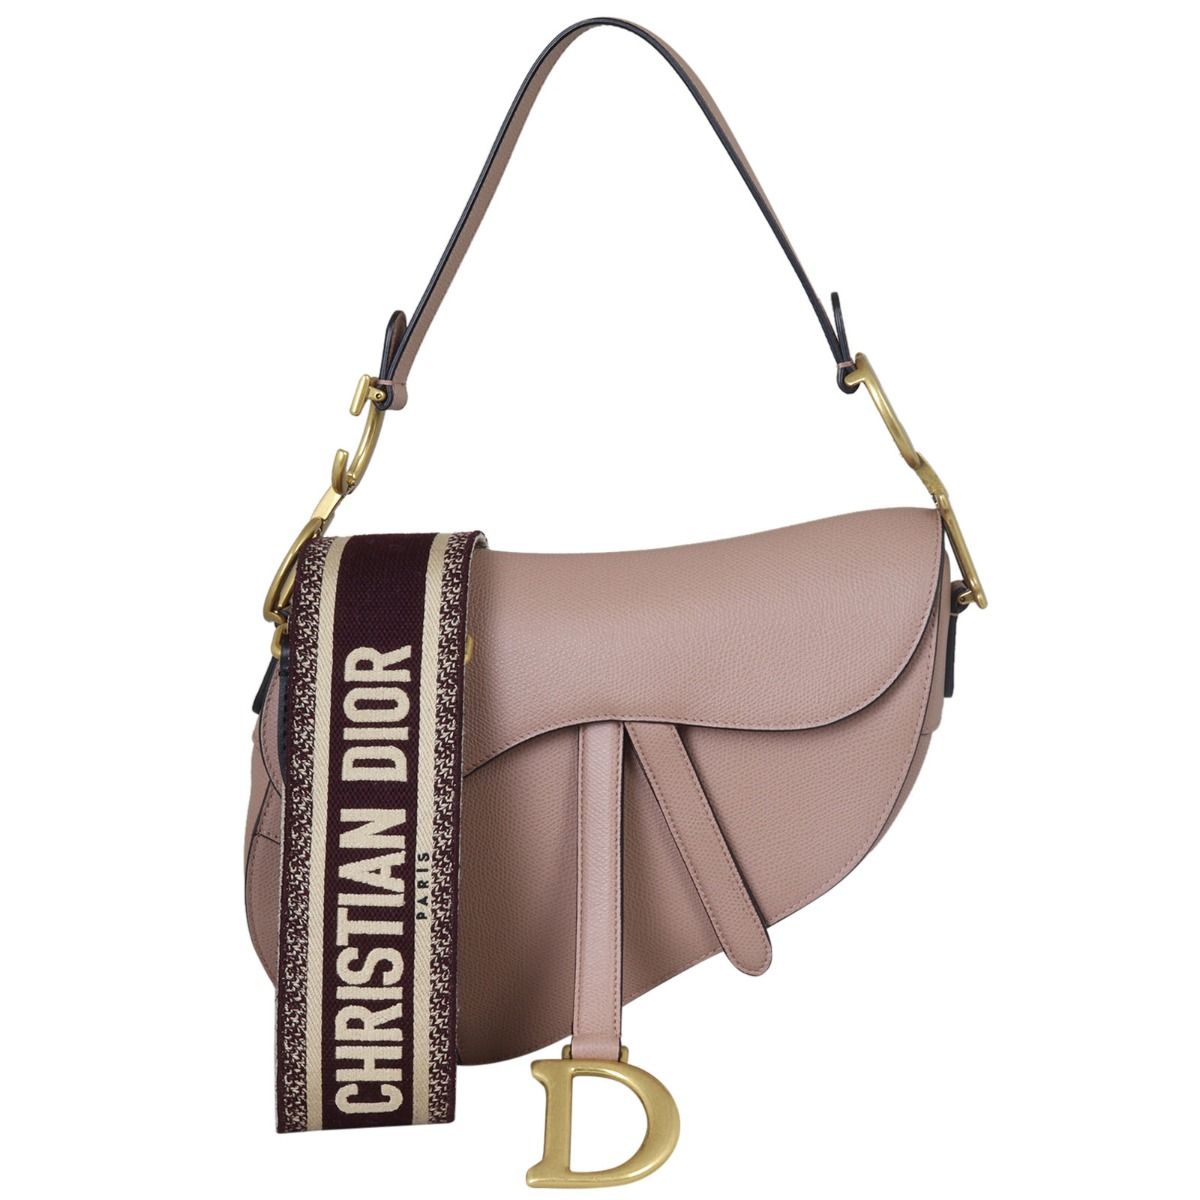 Dior Saddle bag with shoulder strap Black Multiple colors Gold hardware  Leather ref268760  Joli Closet